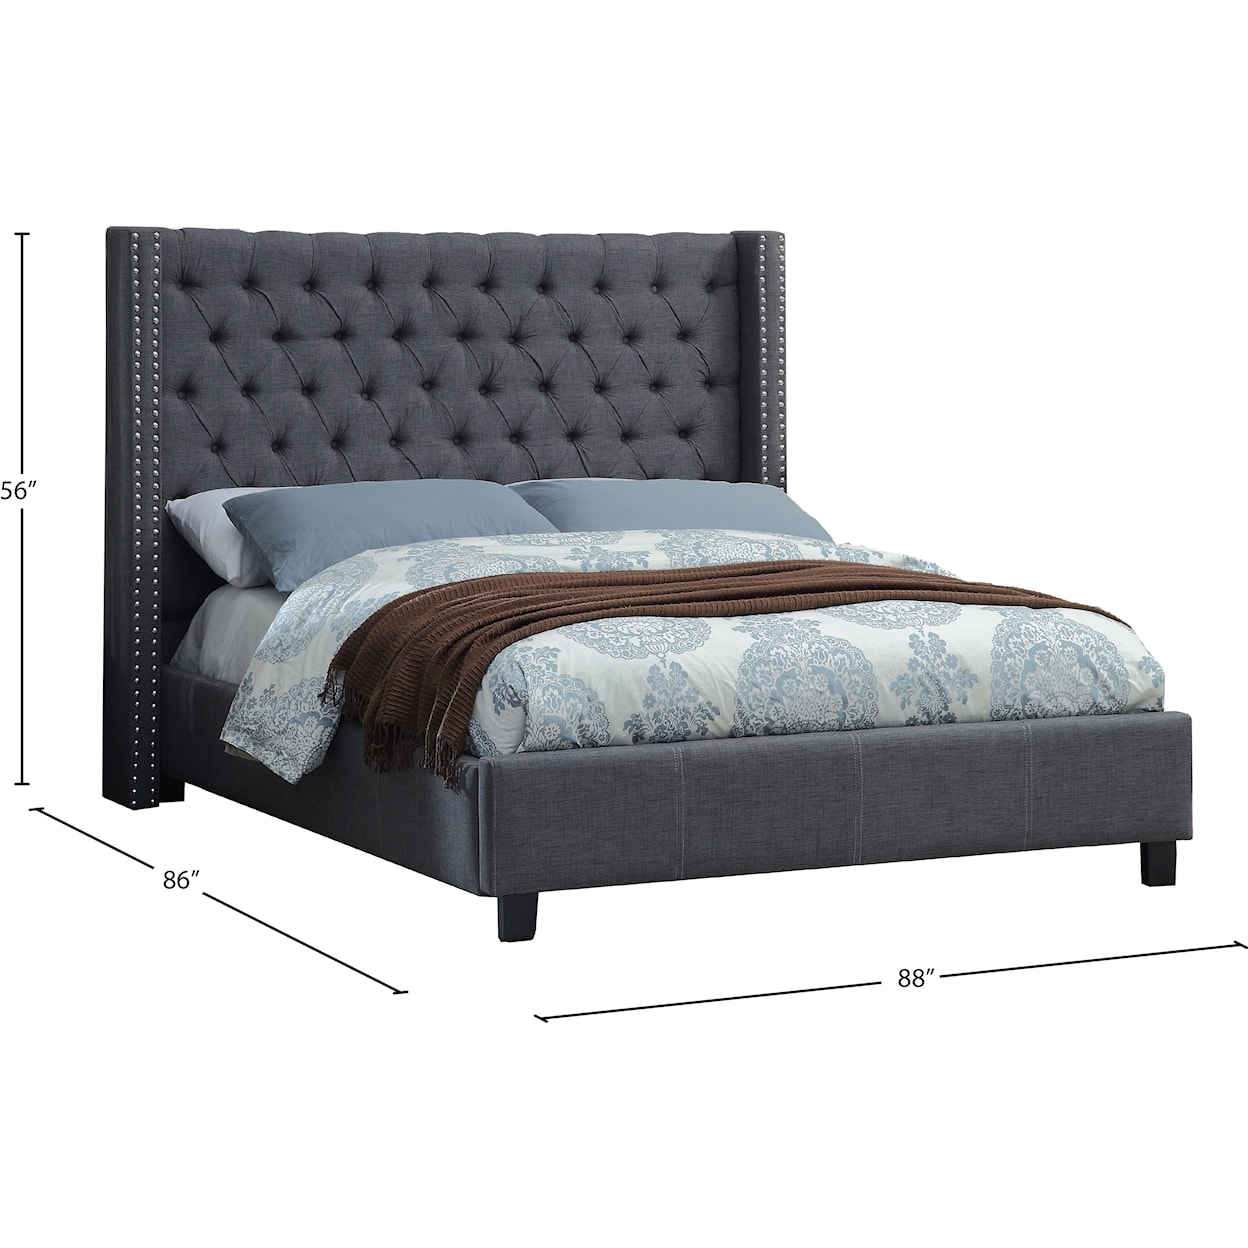 Meridian Furniture Ashton King Bed